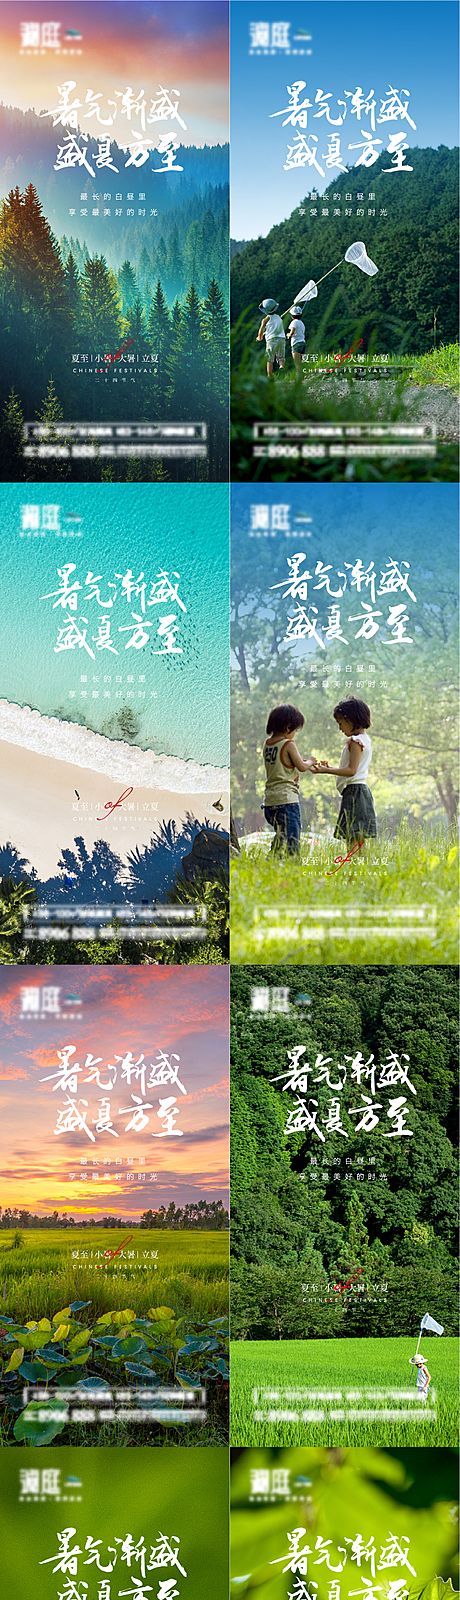 仙图网-夏至小暑大暑立夏处暑节气宣传海报